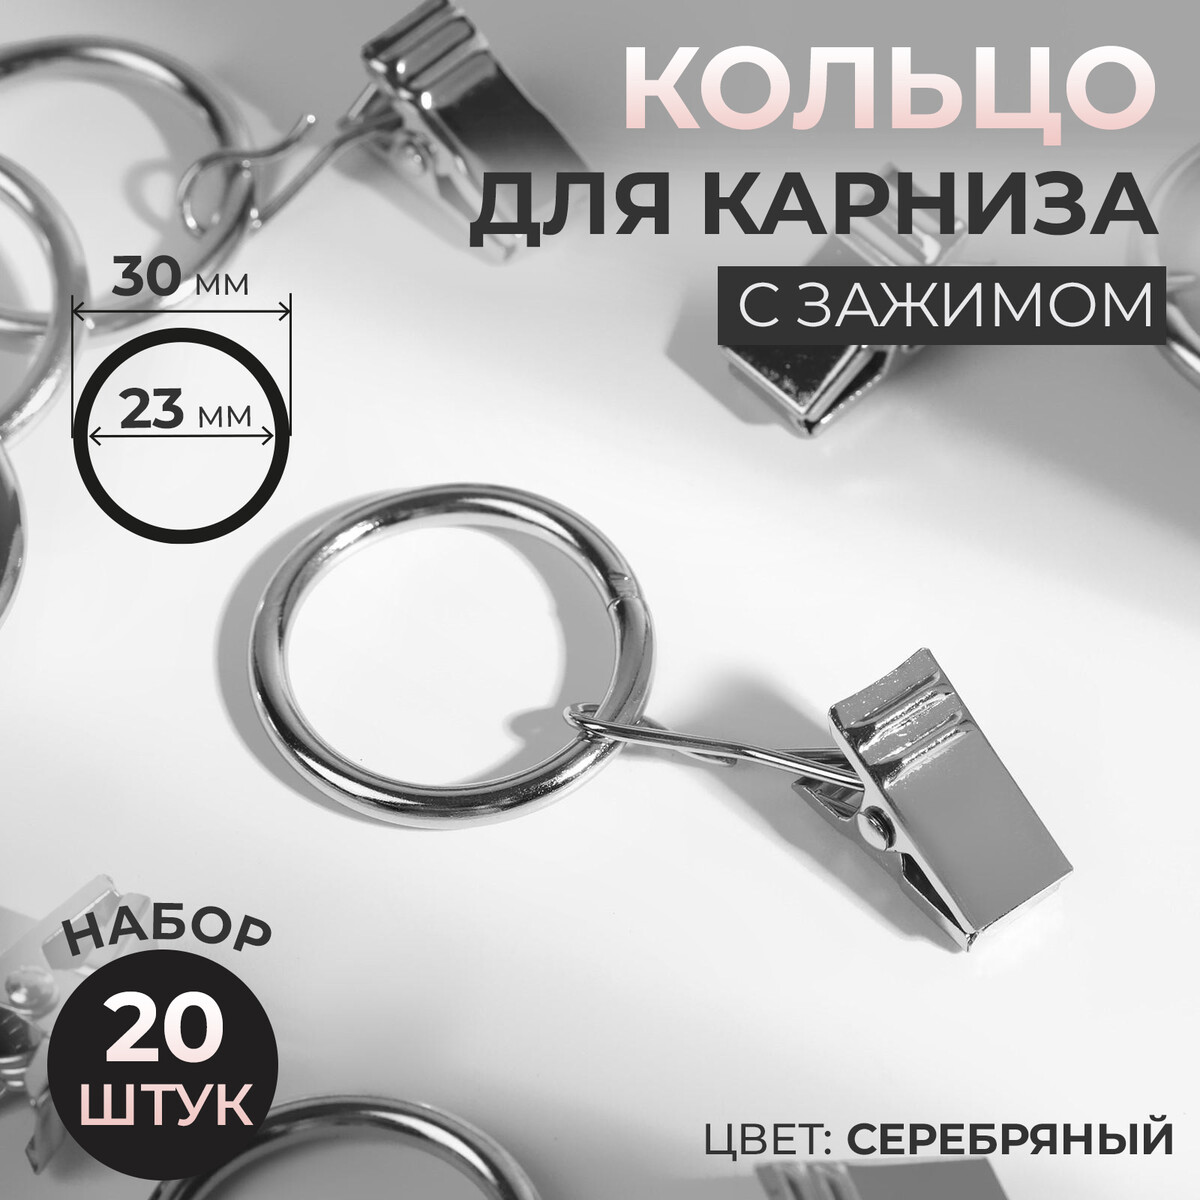 Кольцо для карниза, с зажимом, d = 23/30 мм, 20 шт, цвет серебряный нож revell rev39059 с цанговым зажимом